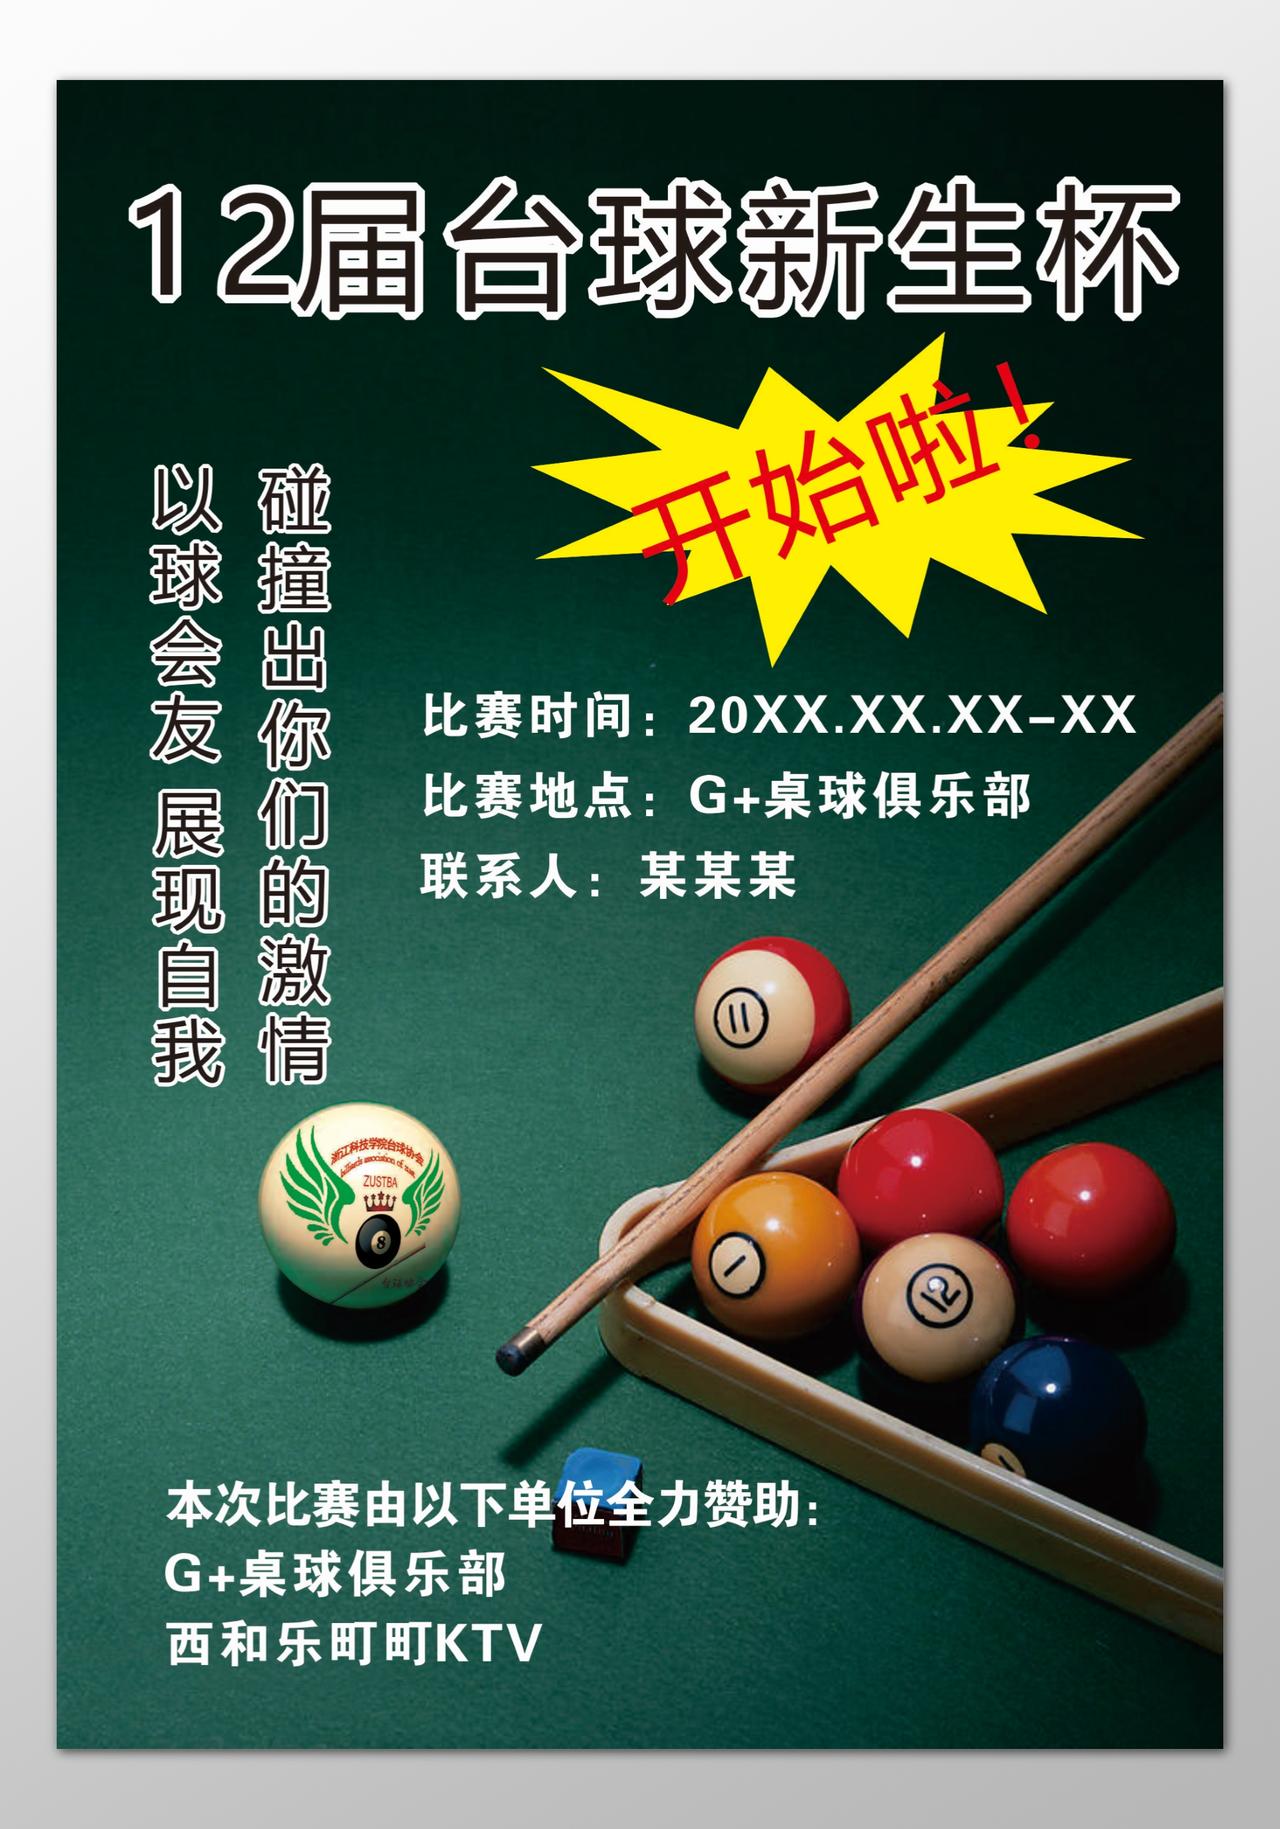 台球海报休闲娱乐桌球俱乐部展现自我绿色海报模板